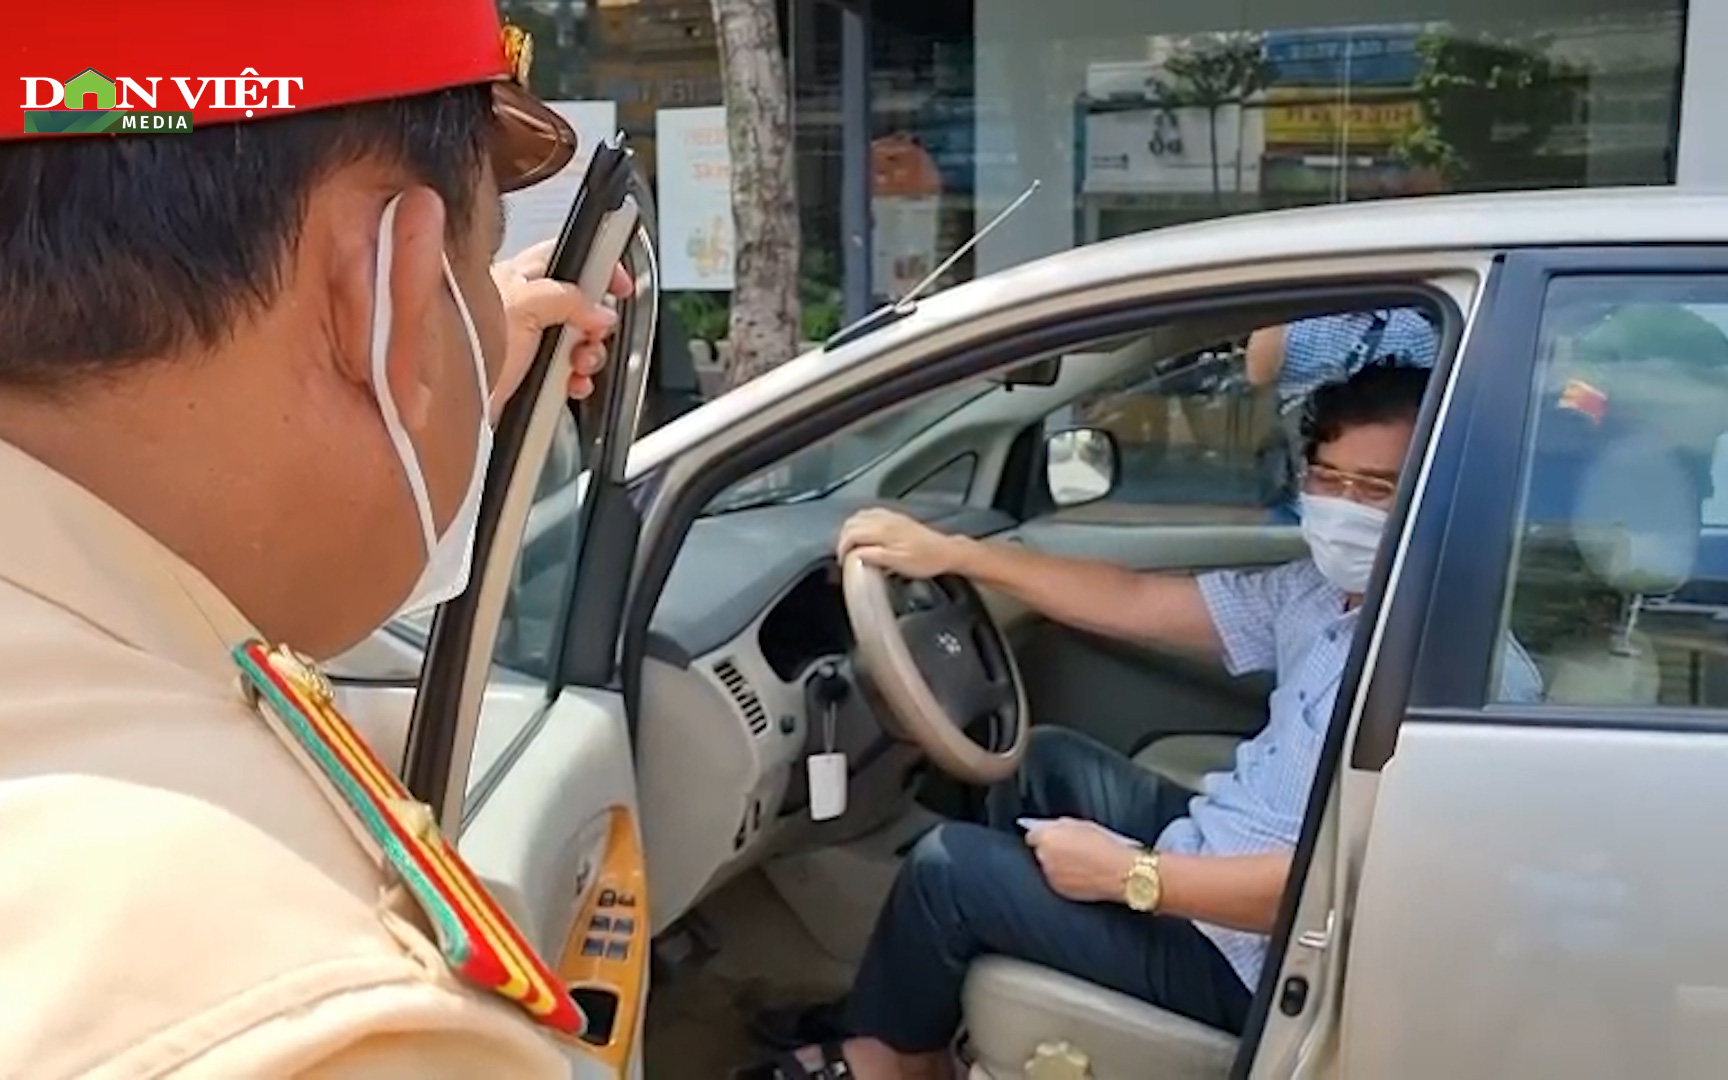 Vụ tài xế cố thủ trên xe bất chấp hiệu lệnh công an: Tài xế là thanh tra sở Tài nguyên và Môi trường